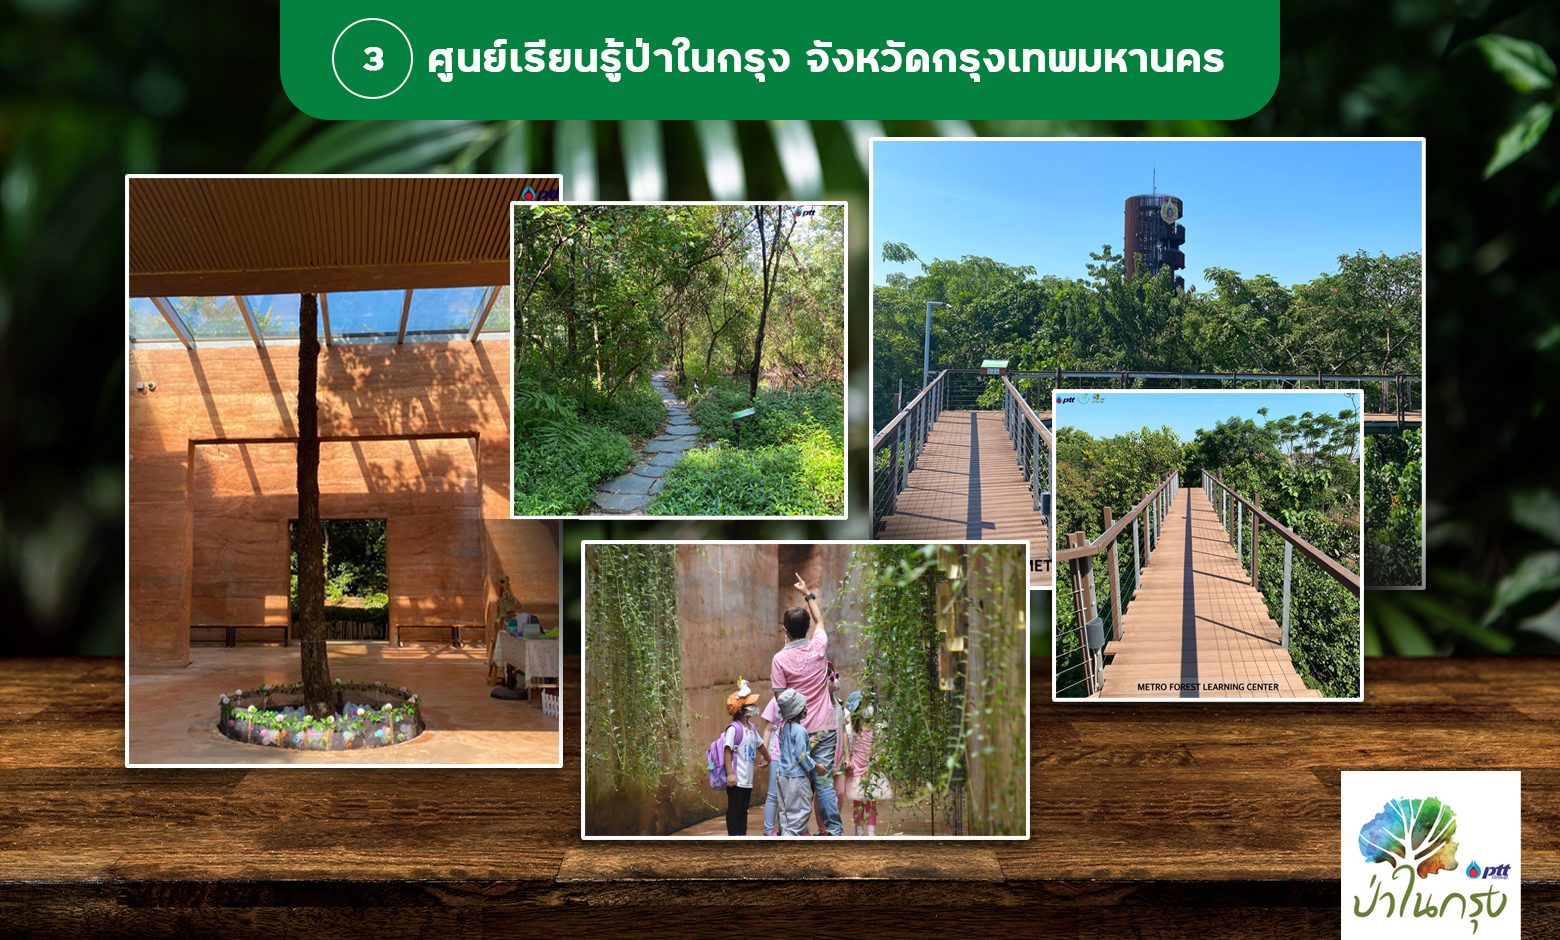 พาลูกเที่ยวธรรมชาติที่ศูนย์เรียนรู้ป่าในกรุง กรุงเทพมหานคร